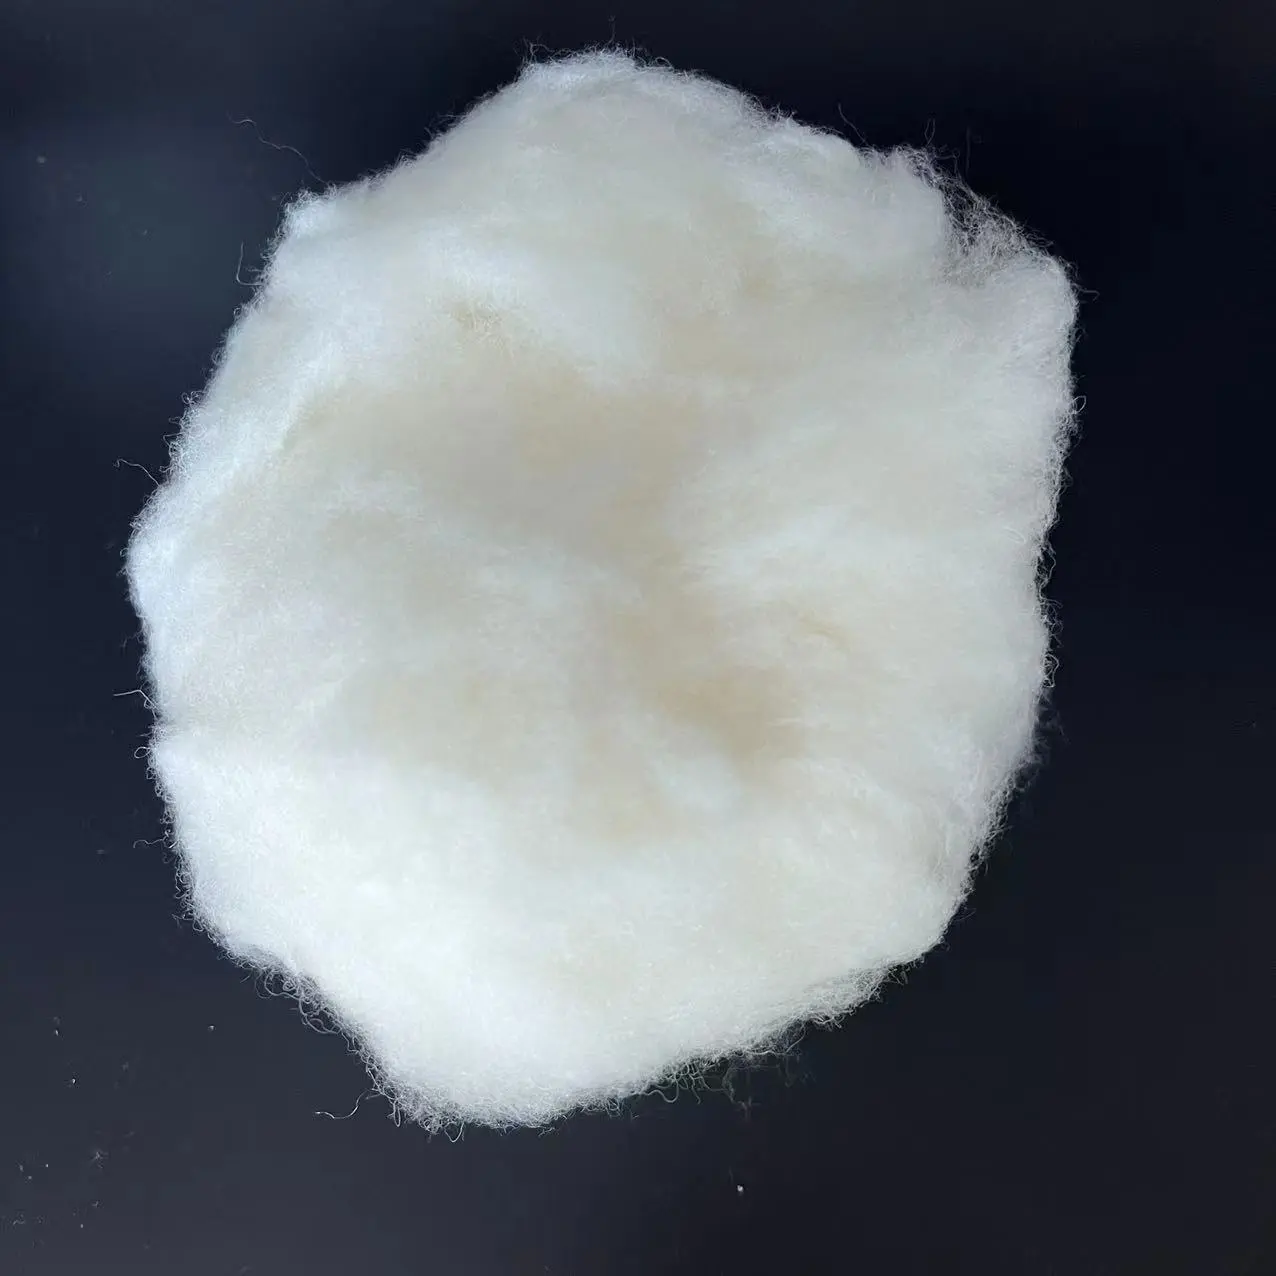 Giá Rẻ Nhất Giá Siêu Rửa Sạch Cashmere 100% Tự Nhiên Cừu Len Chải Kỹ Cashmere Cho Kéo Sợi